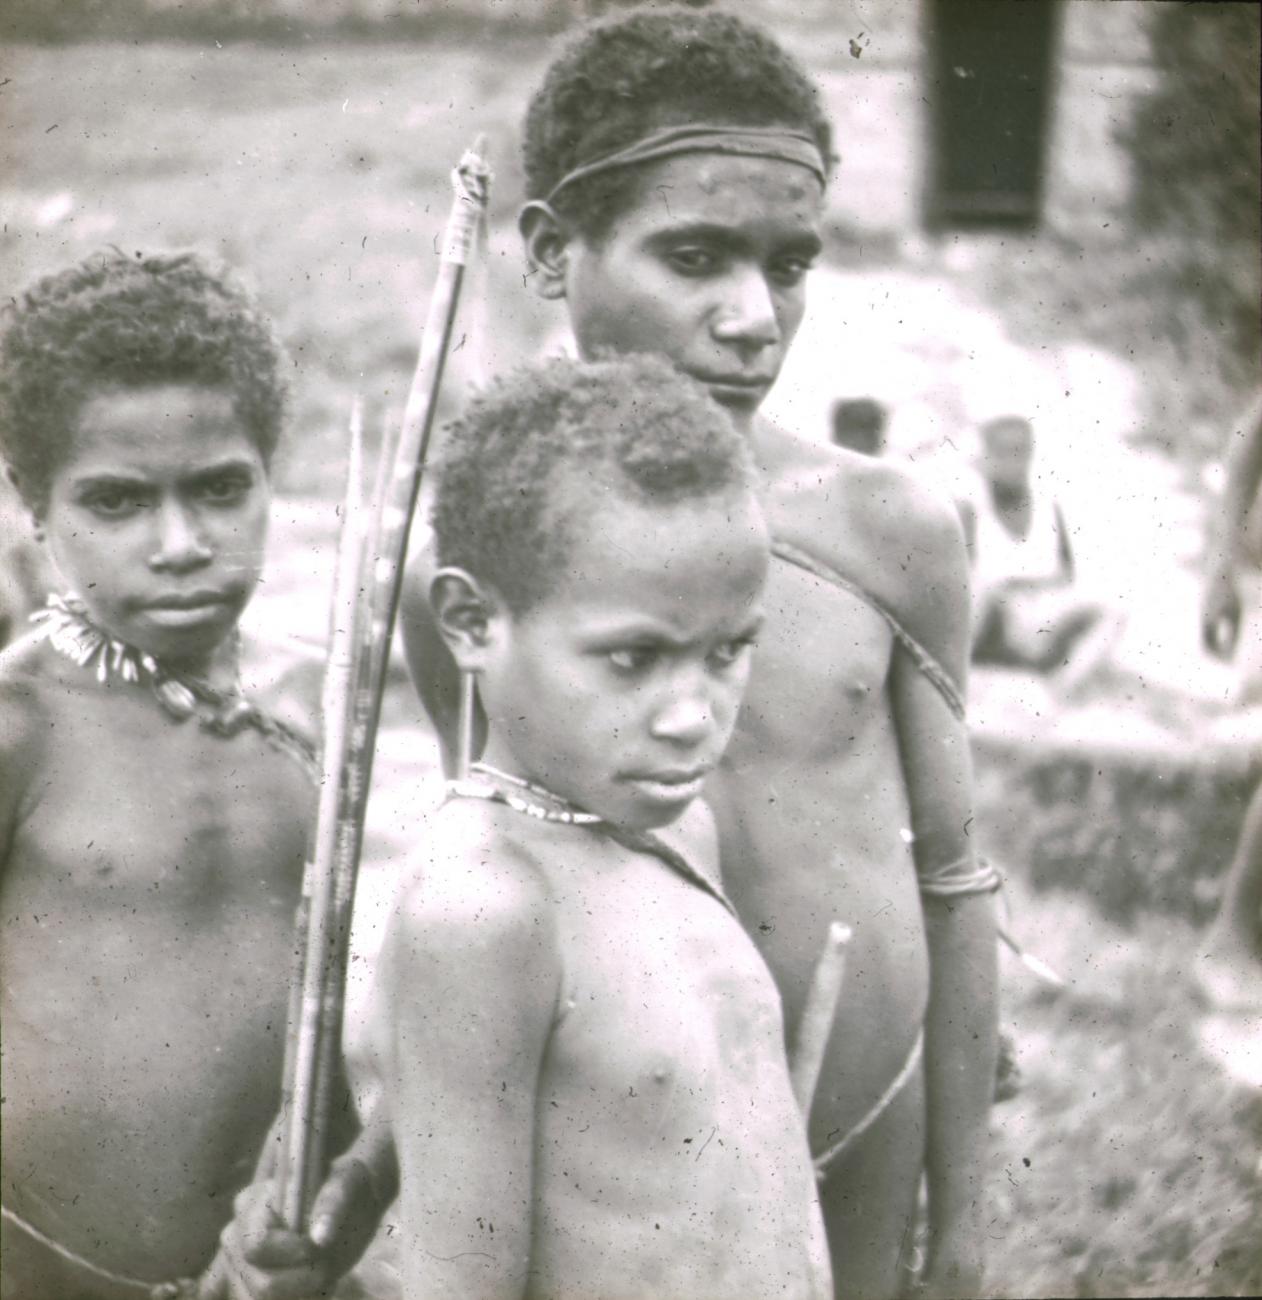 BD/329/39 - 
Drie Papoea-jongens met pijl-en-boog
